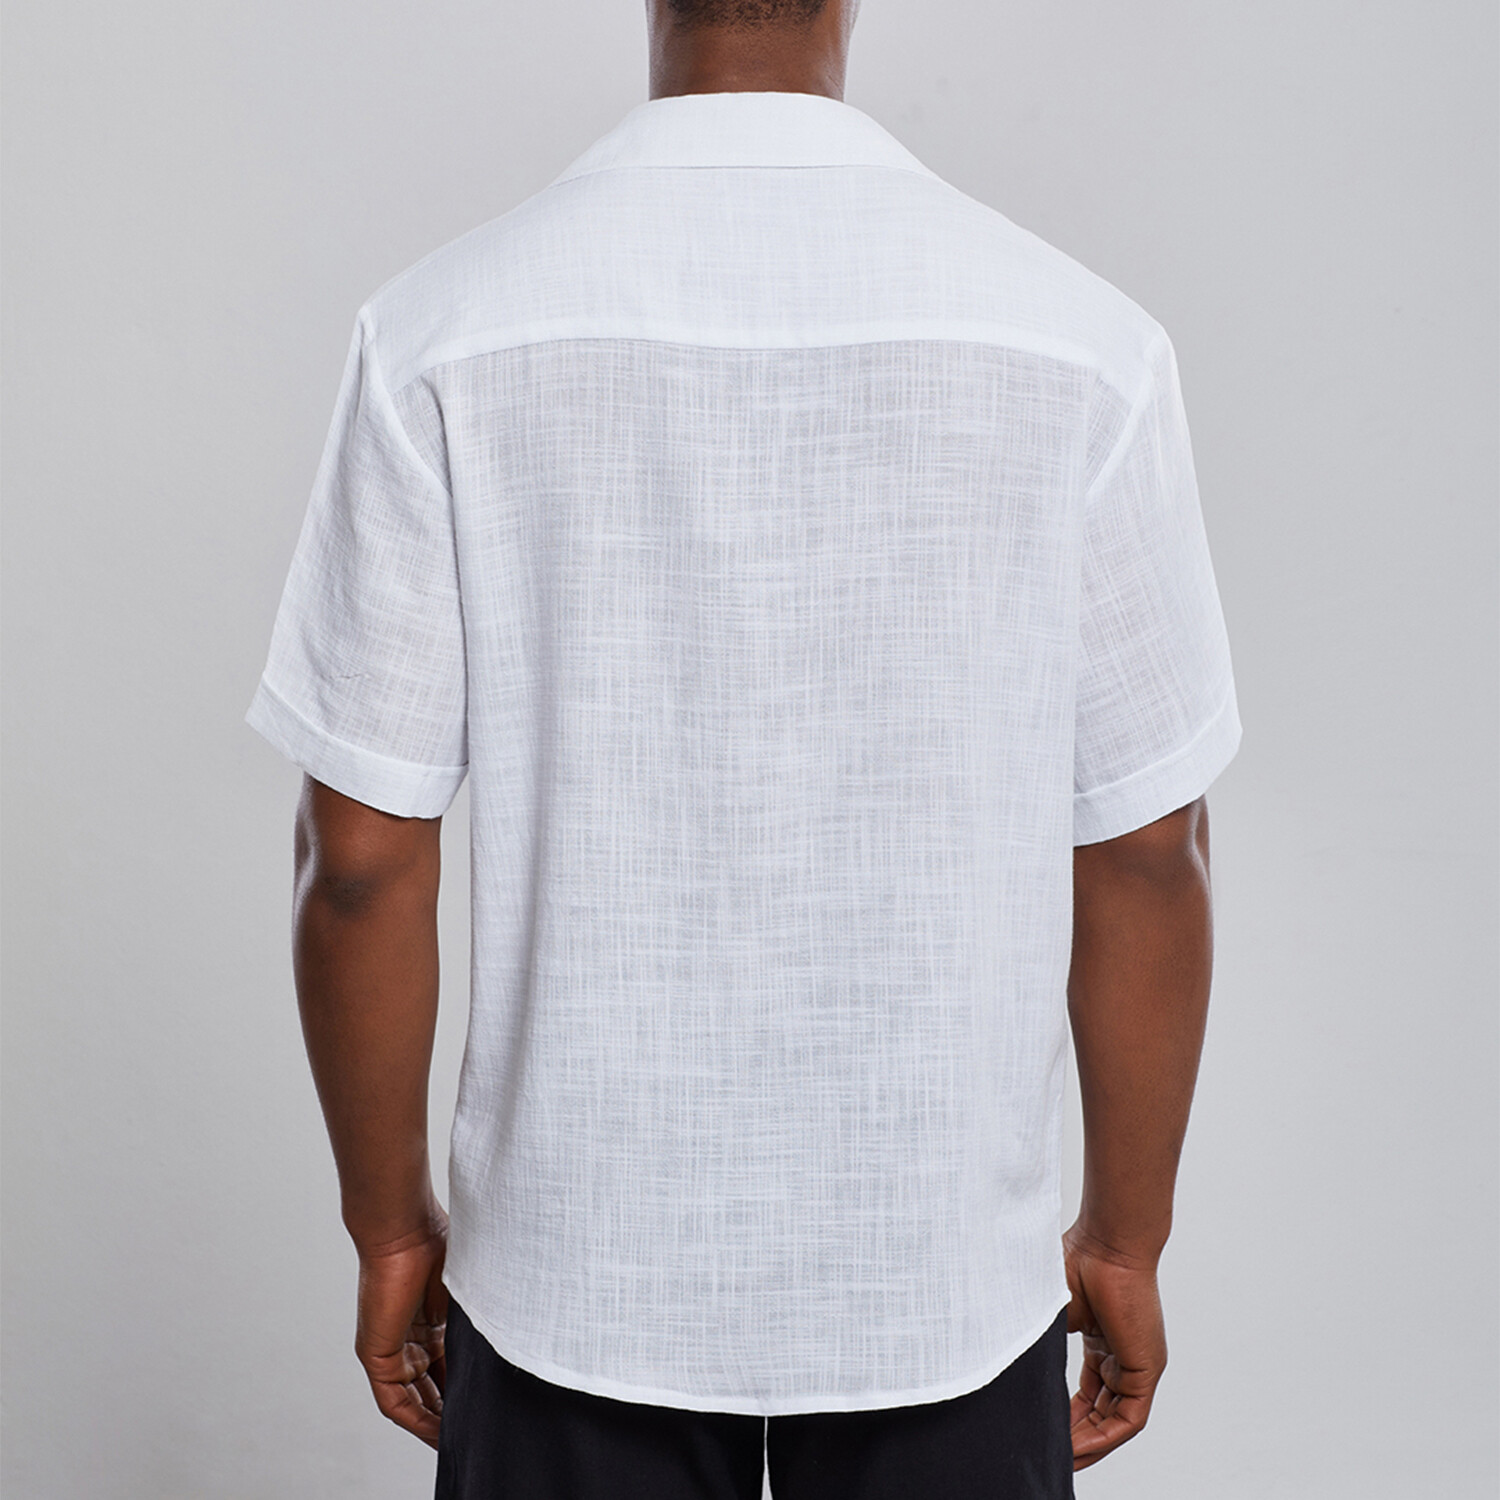 Organic Cotton Oversize Shirt // White (2XL) - Dear Deer Casuals ...